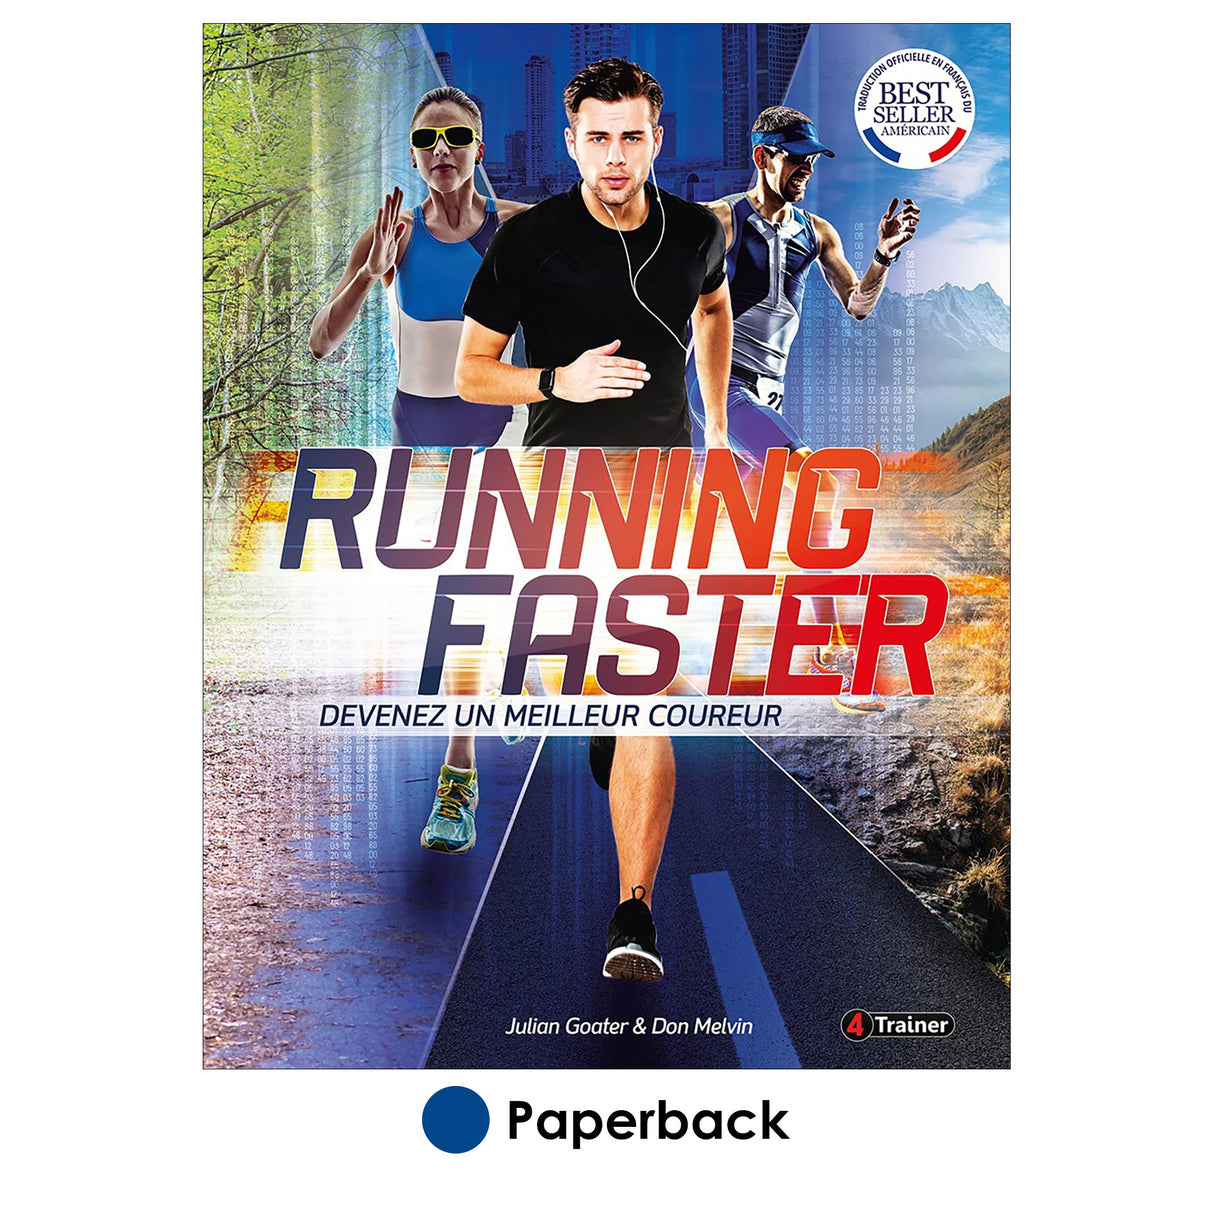 Running Faster - Devenez un meilleur coureur